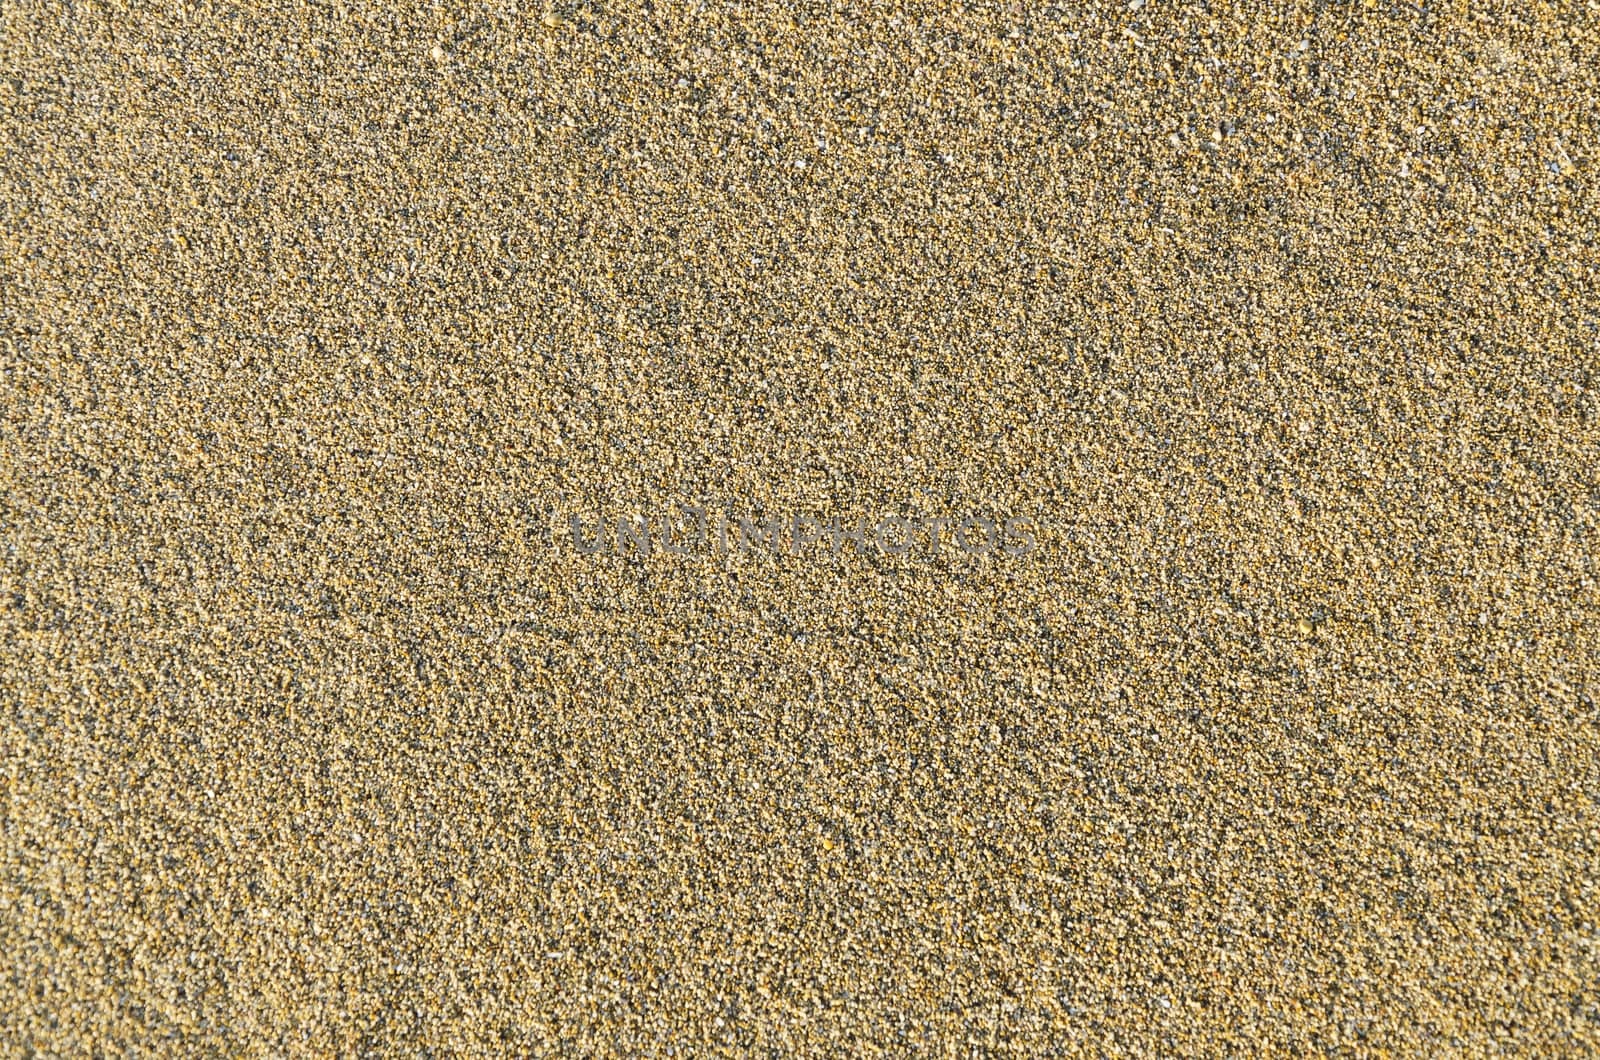 sand texture background by Grufnar